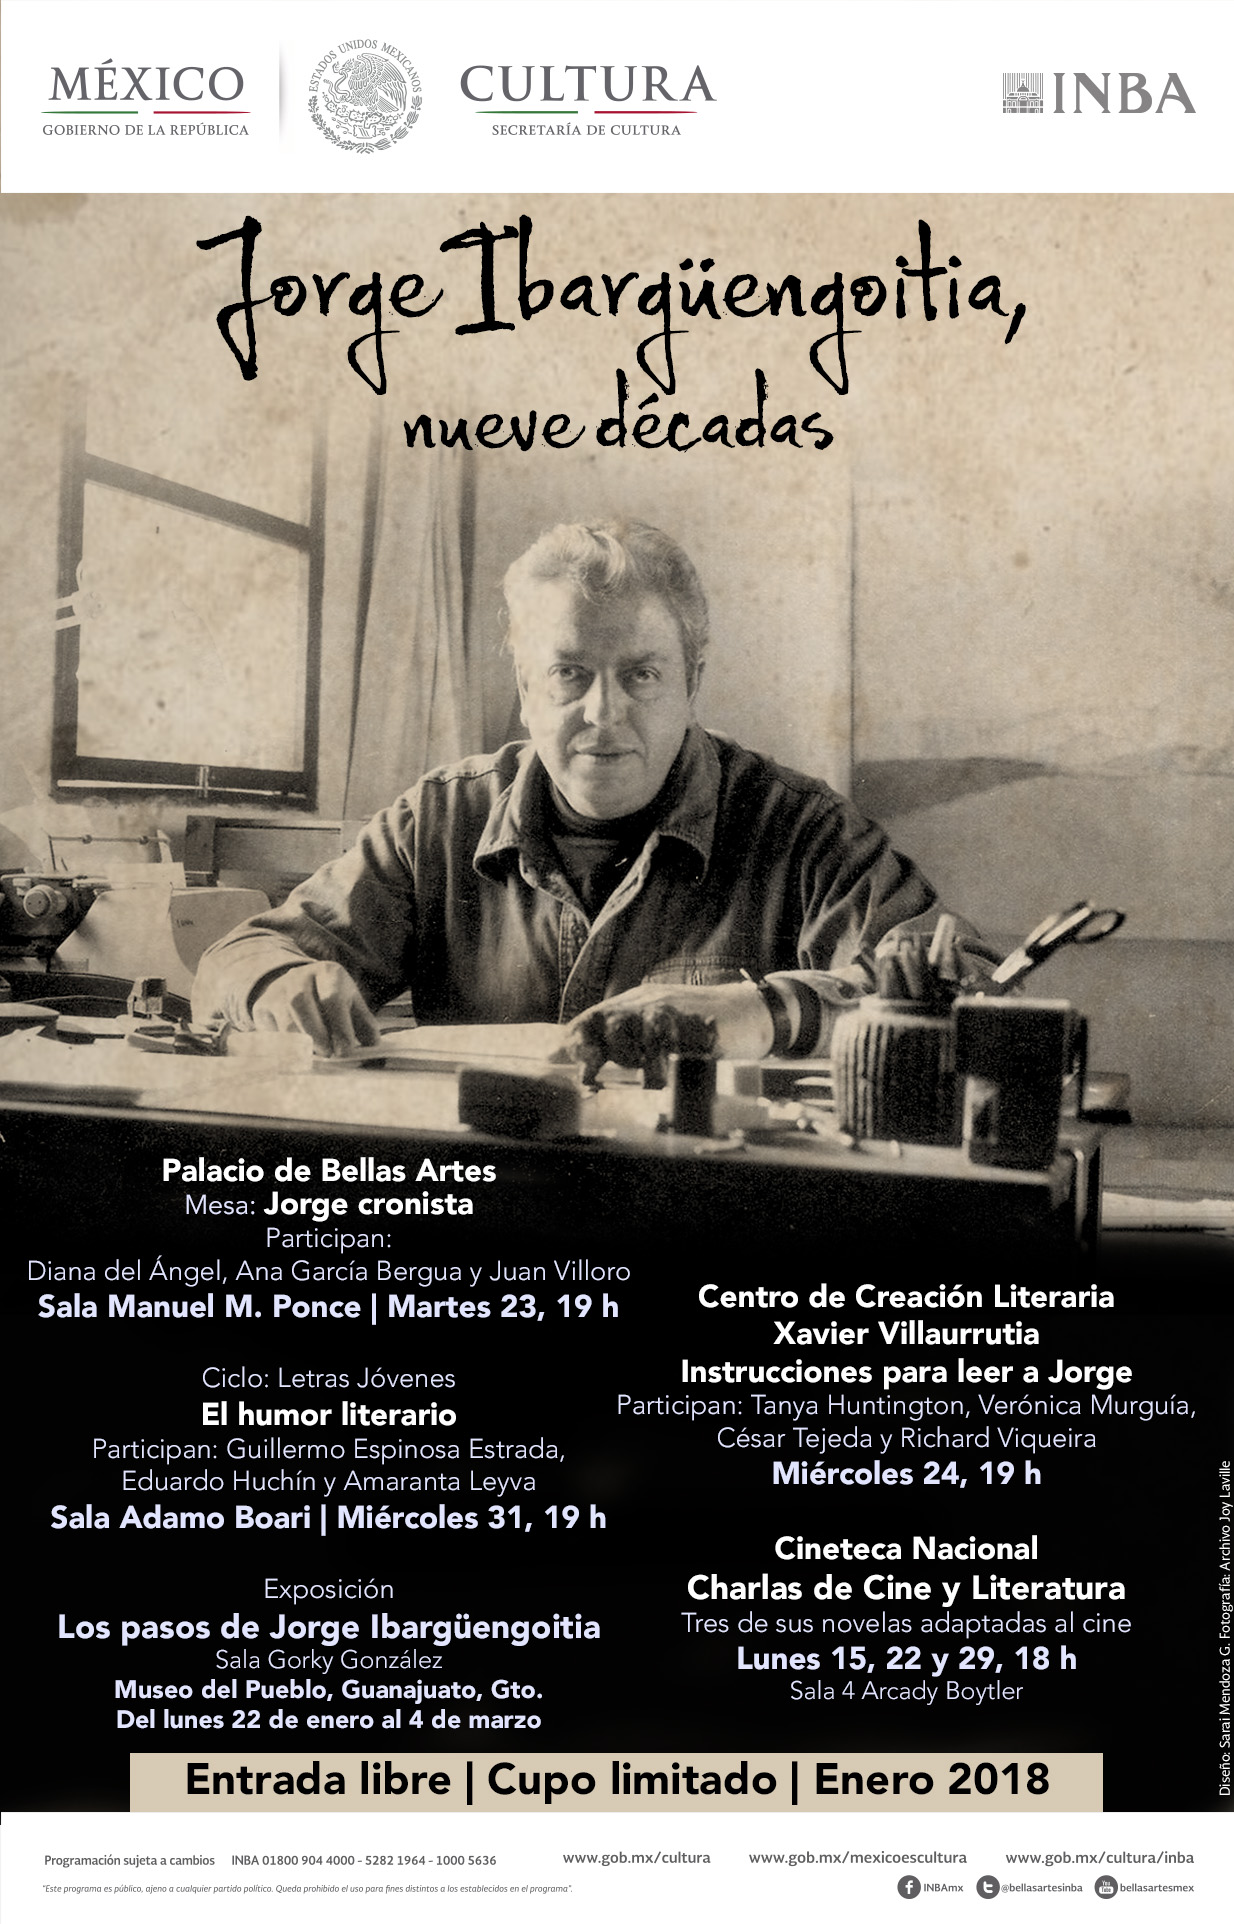 Con diversas actividades, el INBA celebrará al escritor Jorge  Ibargüengoitia a 90 años de su nacimiento | Prensa INBA - Instituto  Nacional de Bellas Artes | Literatura